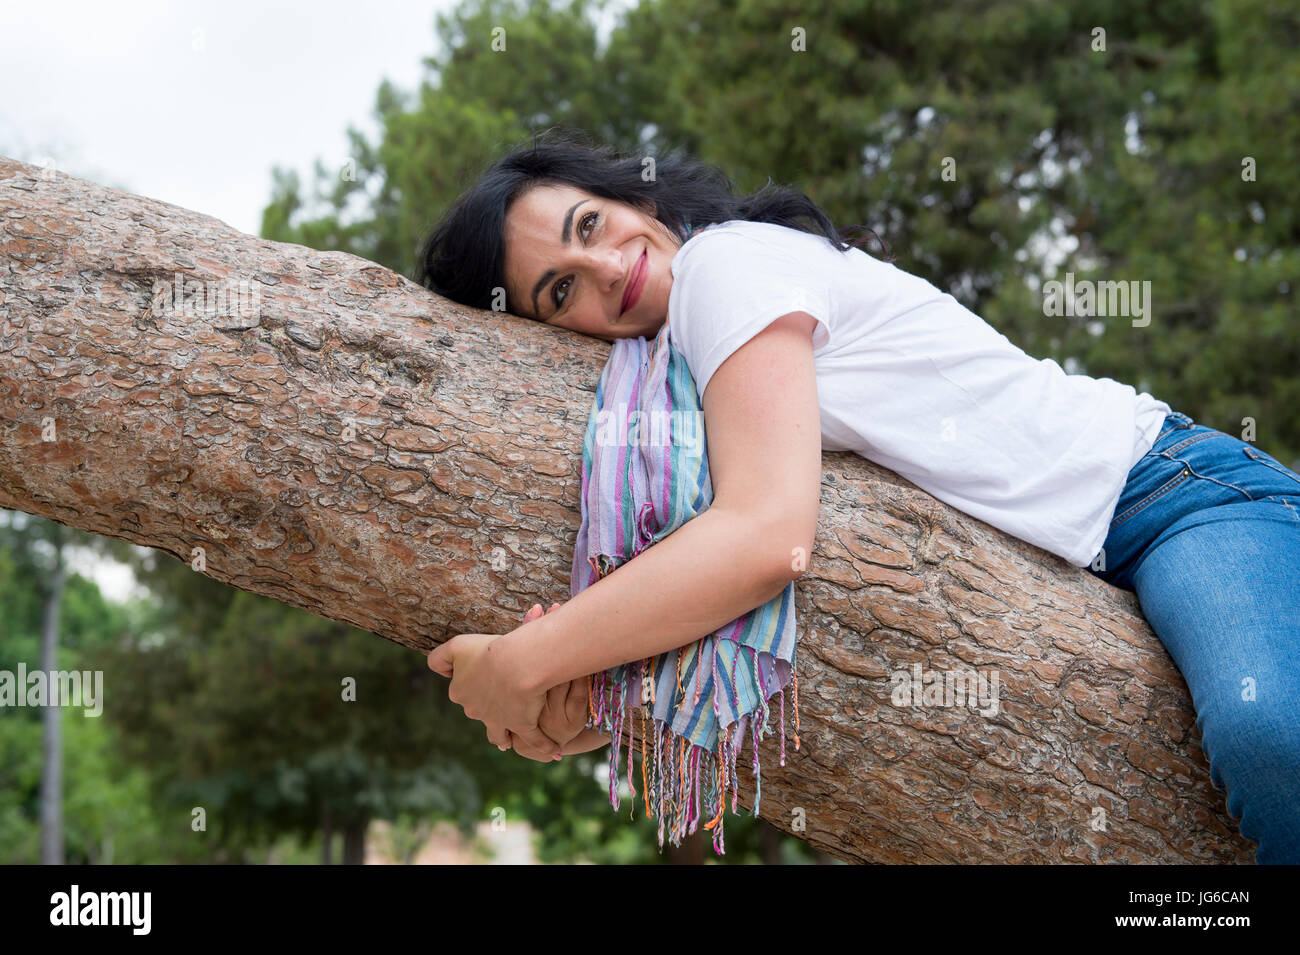 Sehr attraktive Frau kausale Kleidung tragen und umarmt einen Baum in einem grünen park Stockfoto